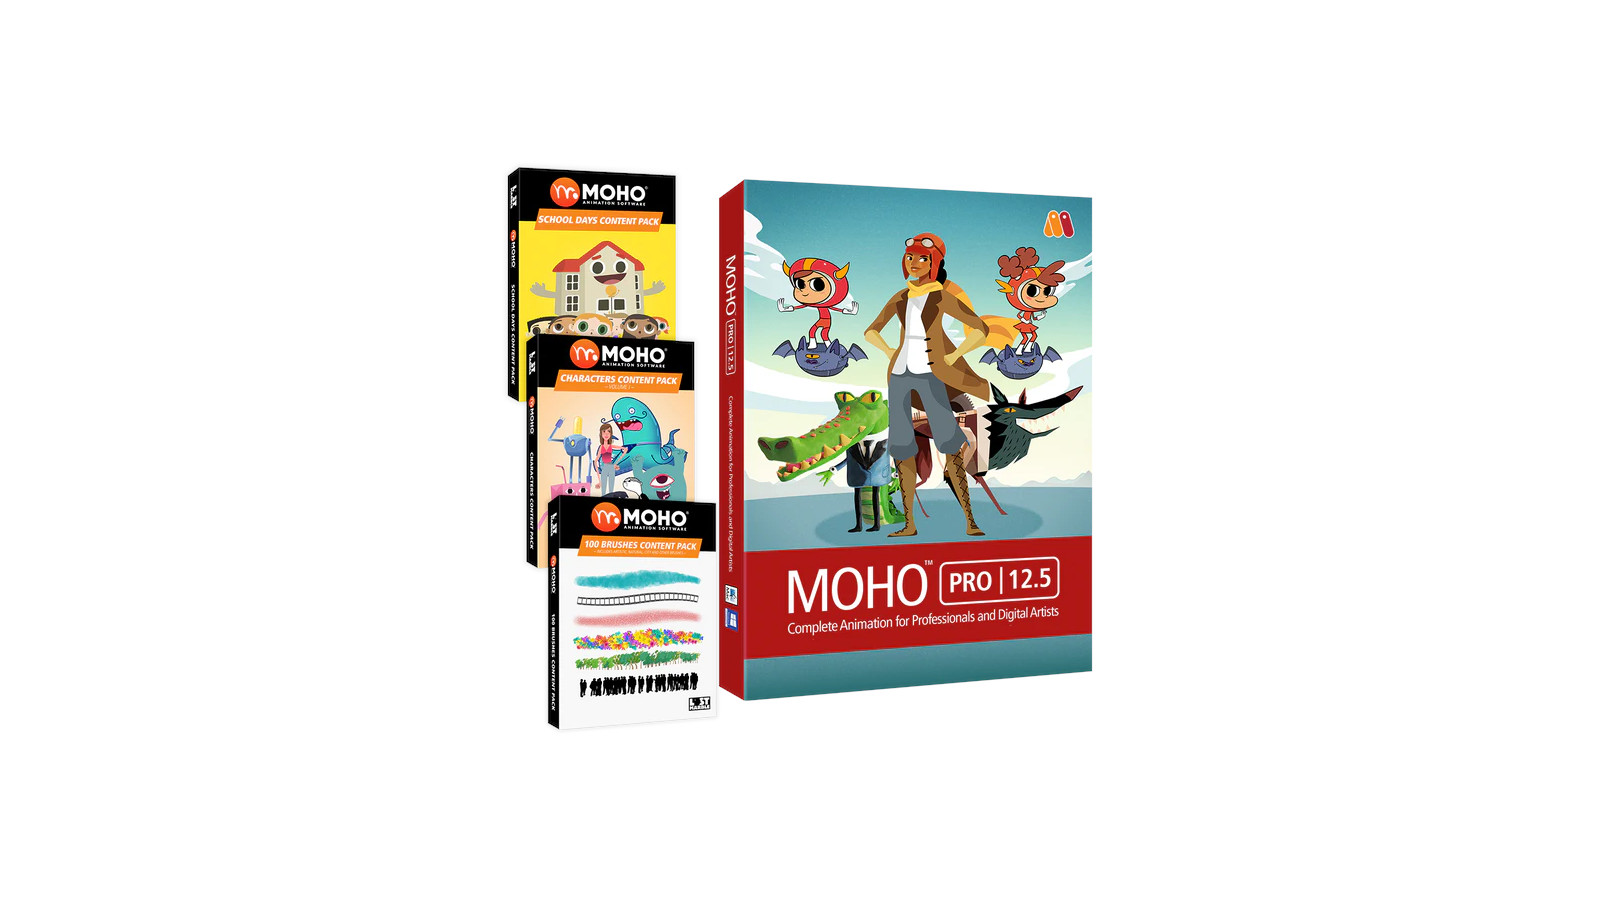 MOHO PRO 12.5 BUNDLE PC/MAC CD Key [$ 386.84]